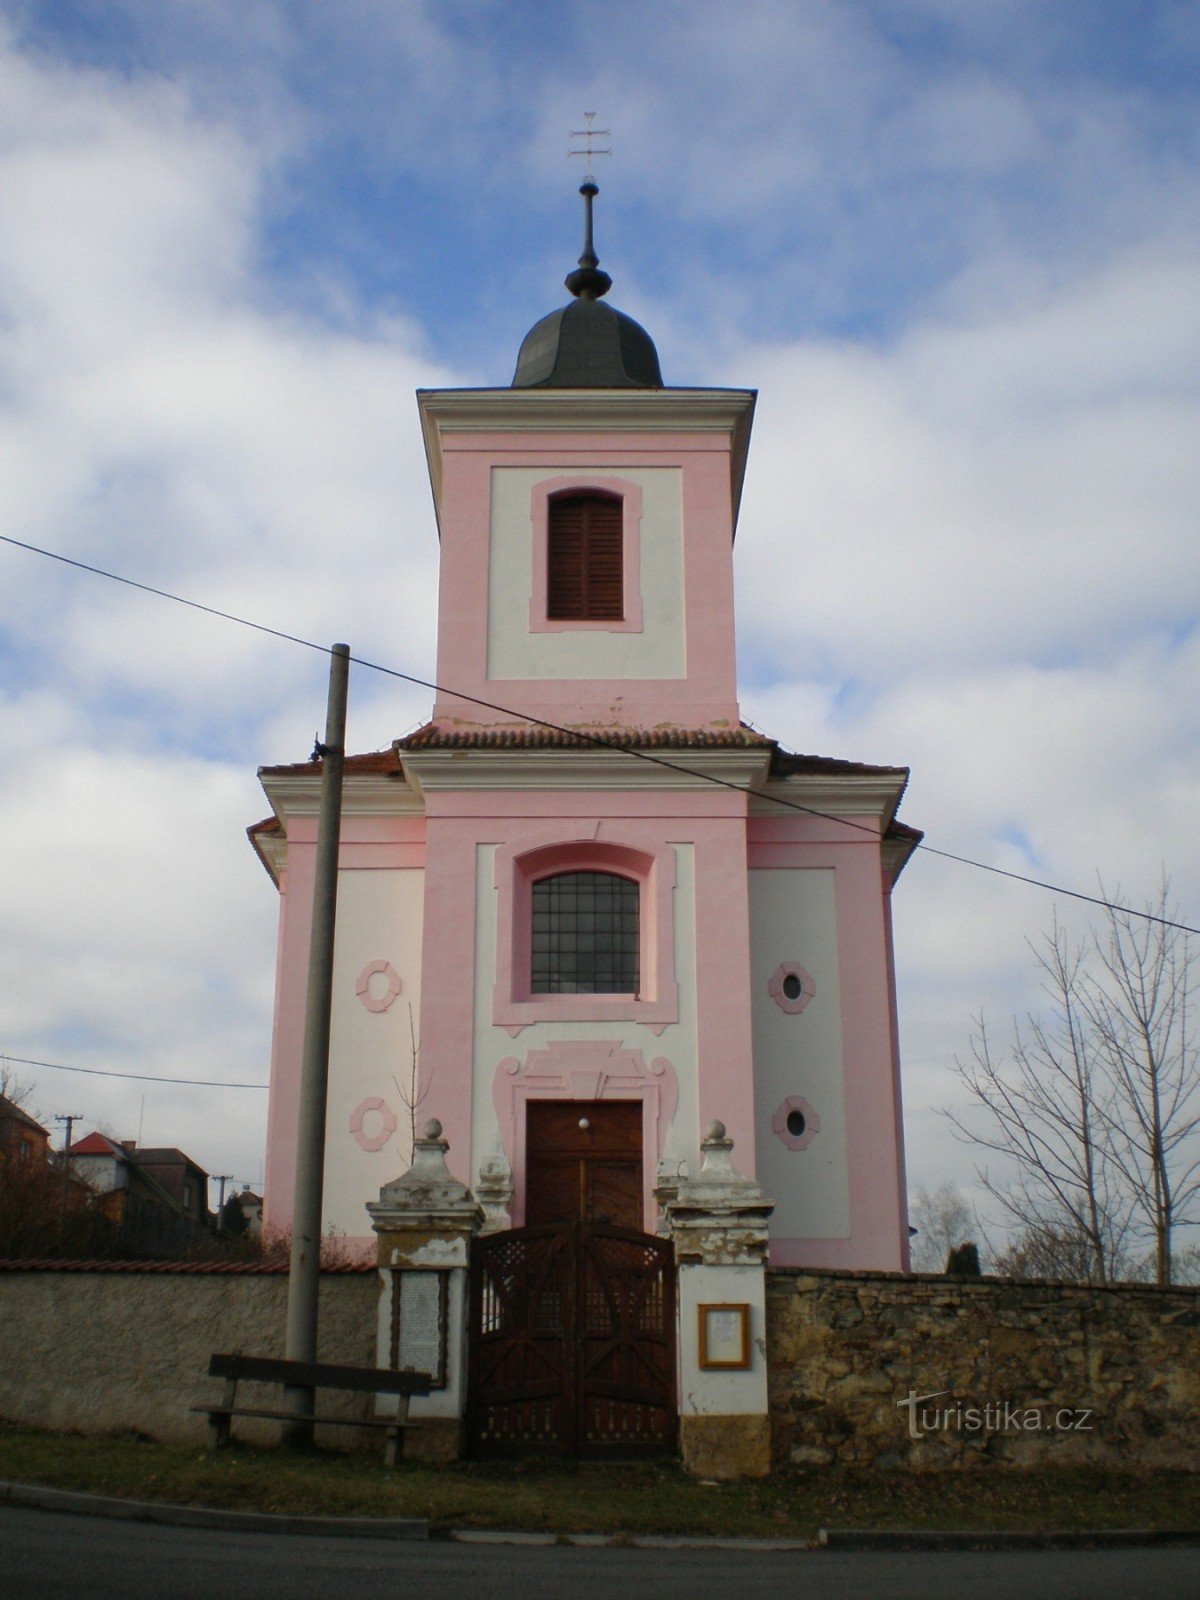 Город - Церковь св. Якуб